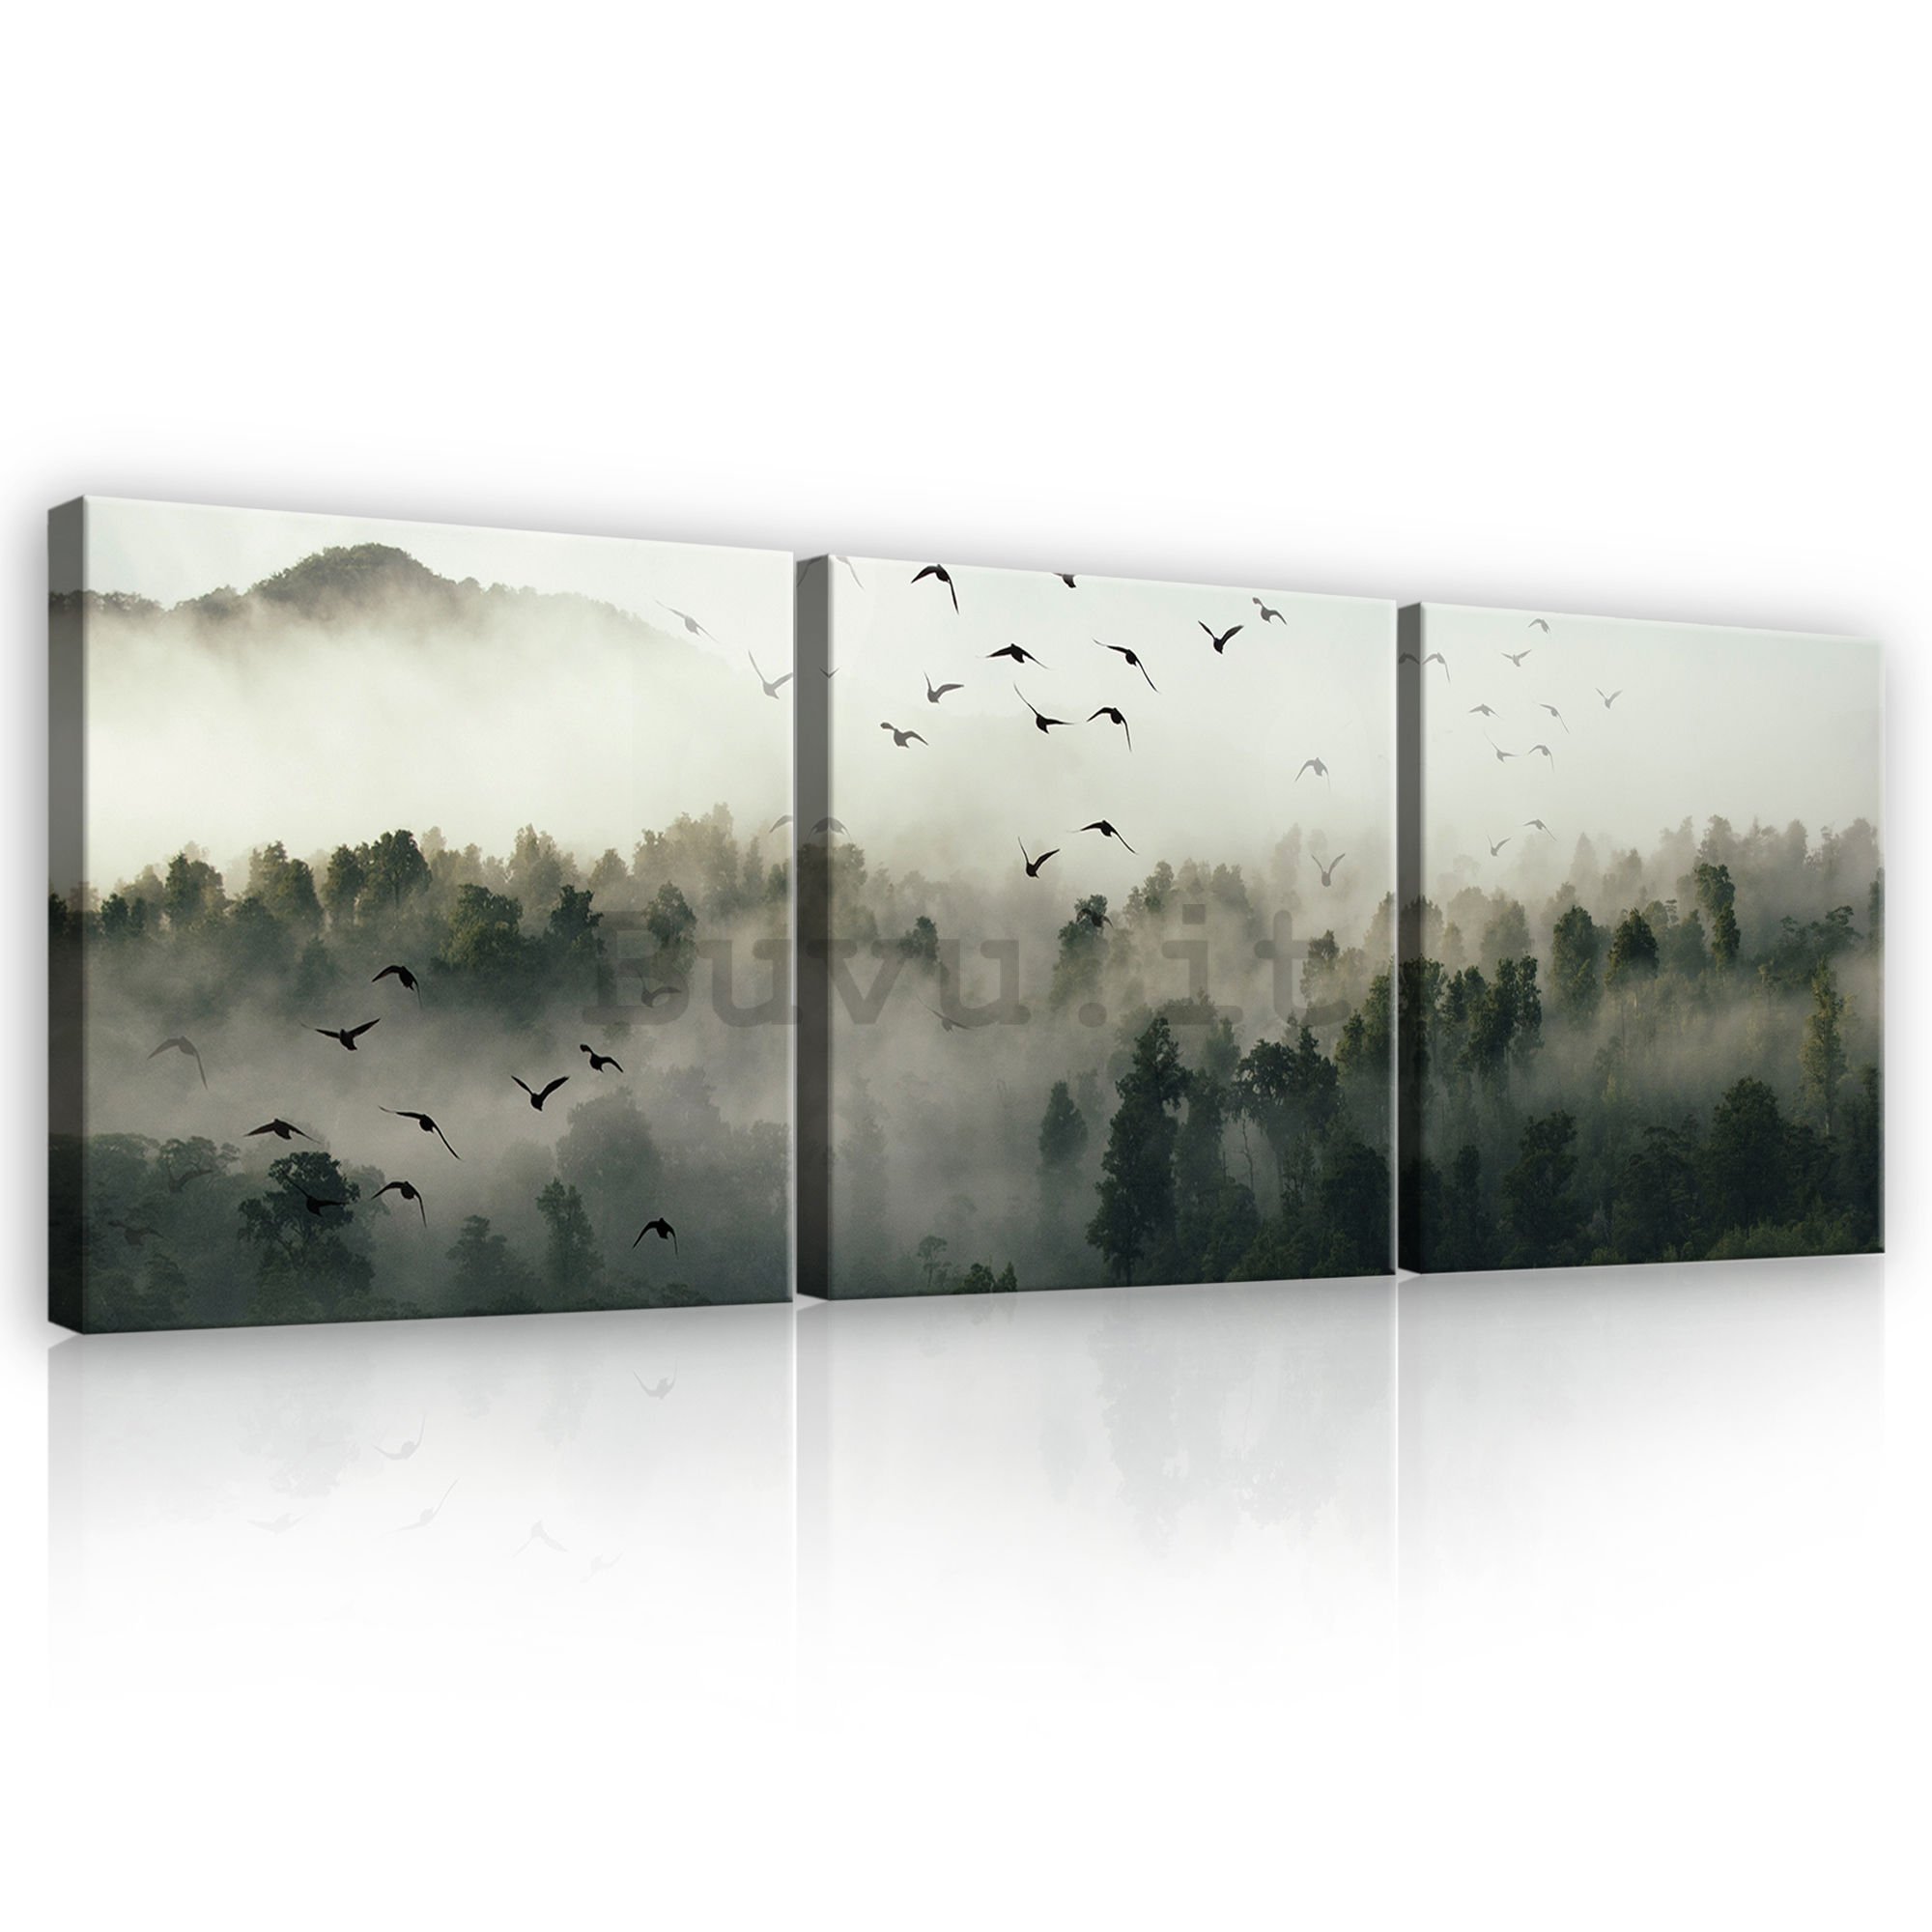 Quadro su tela: La foresta nebbiosa - set 3pz 25x25cm